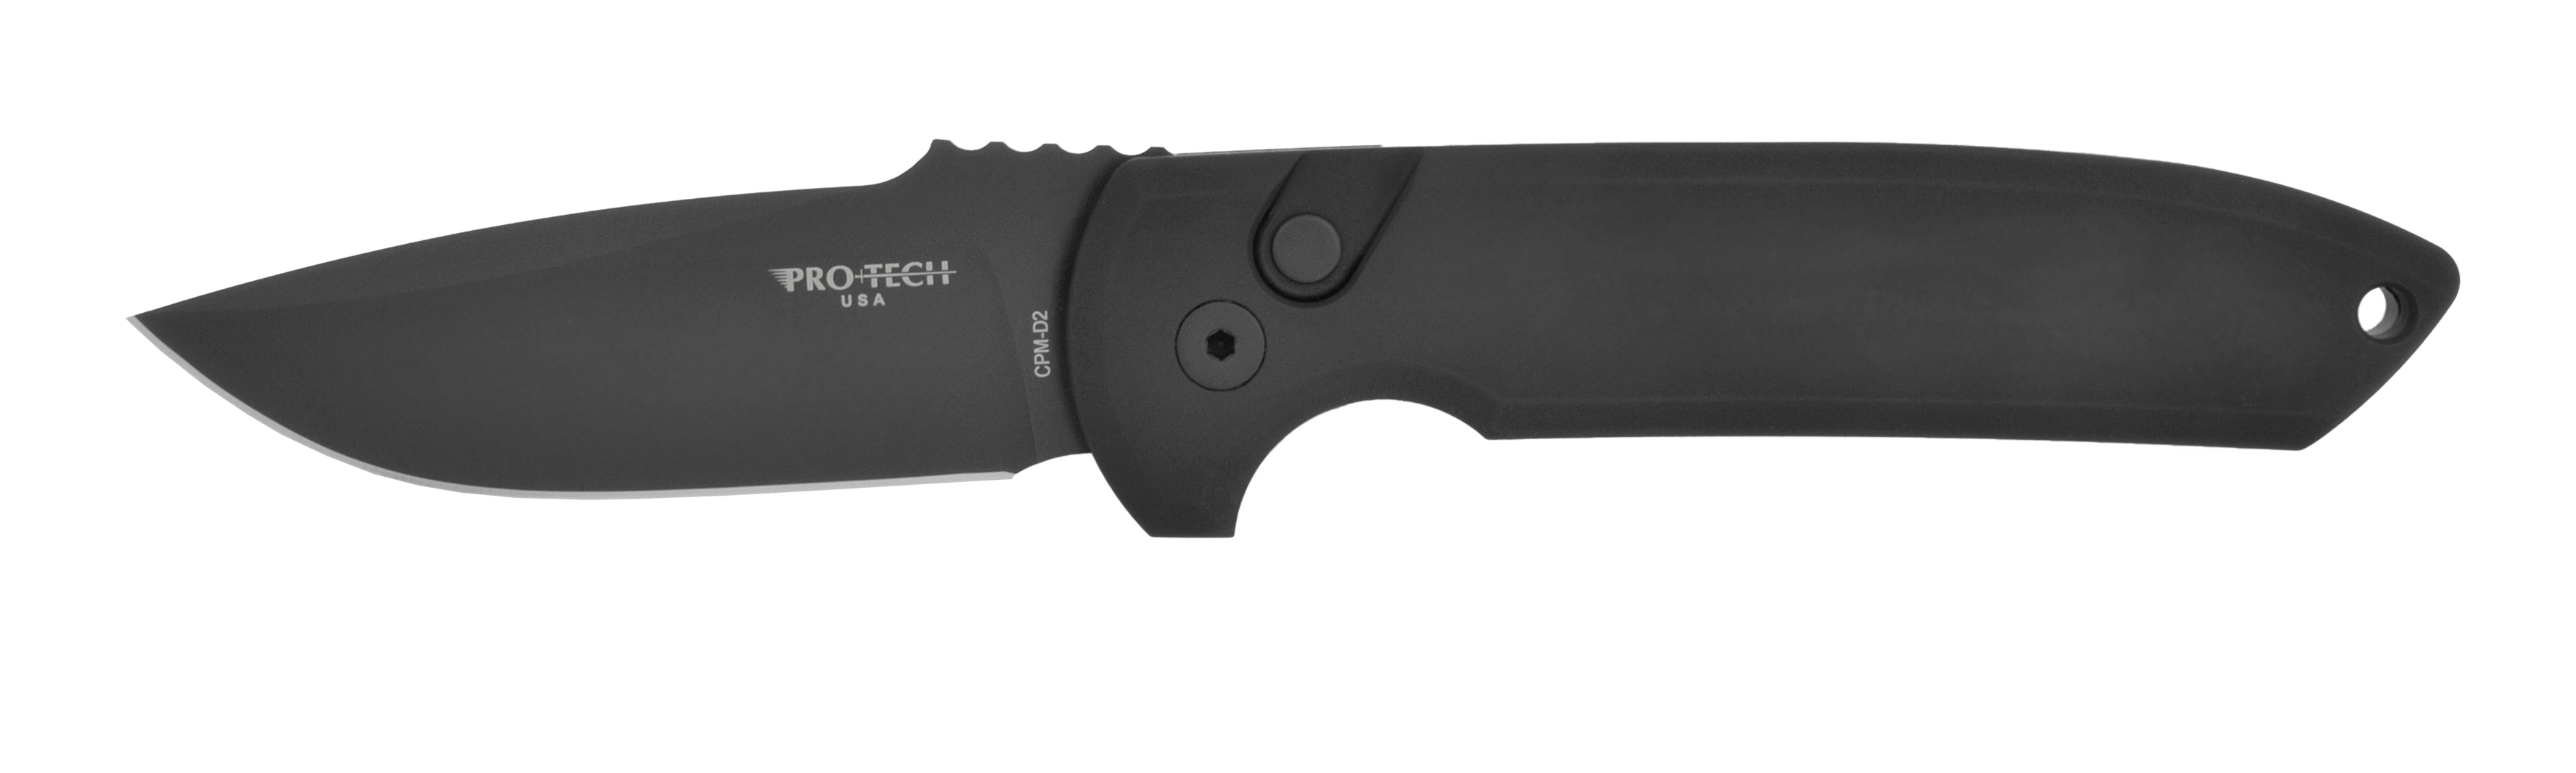 Нож Pro-Tech Rockeye складной сталь D2 рукоять алюминий